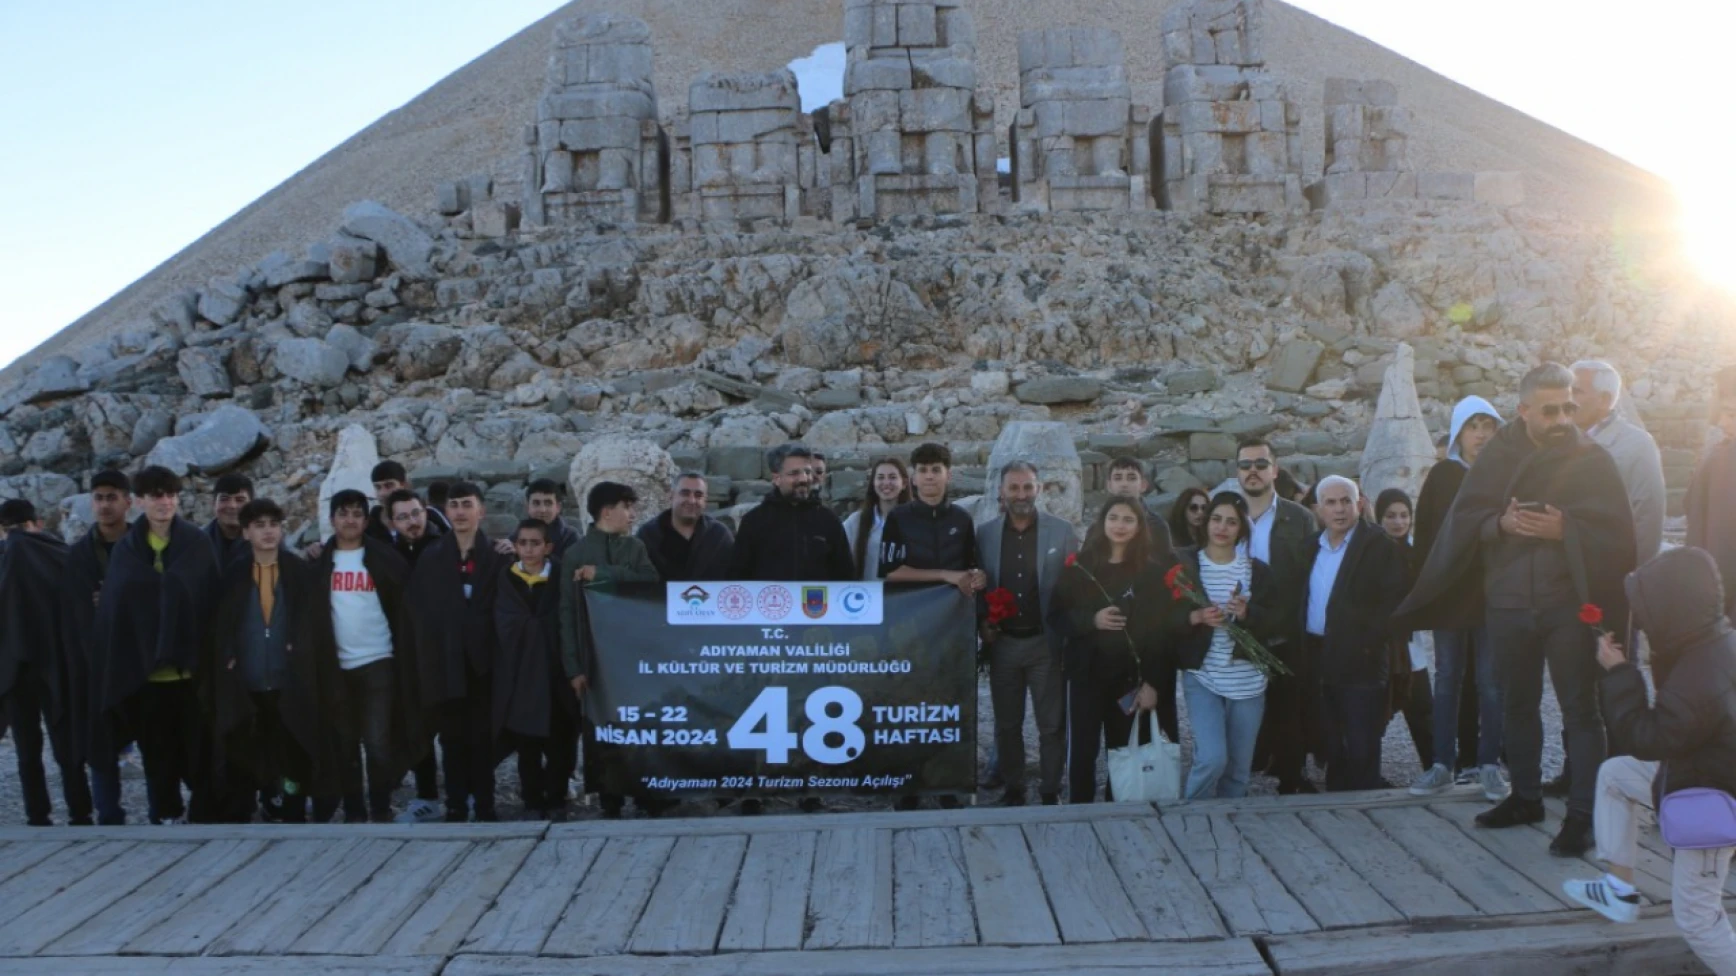 Nemrut Dağı’nı 9 günde 45 bin turist ziyaret etti